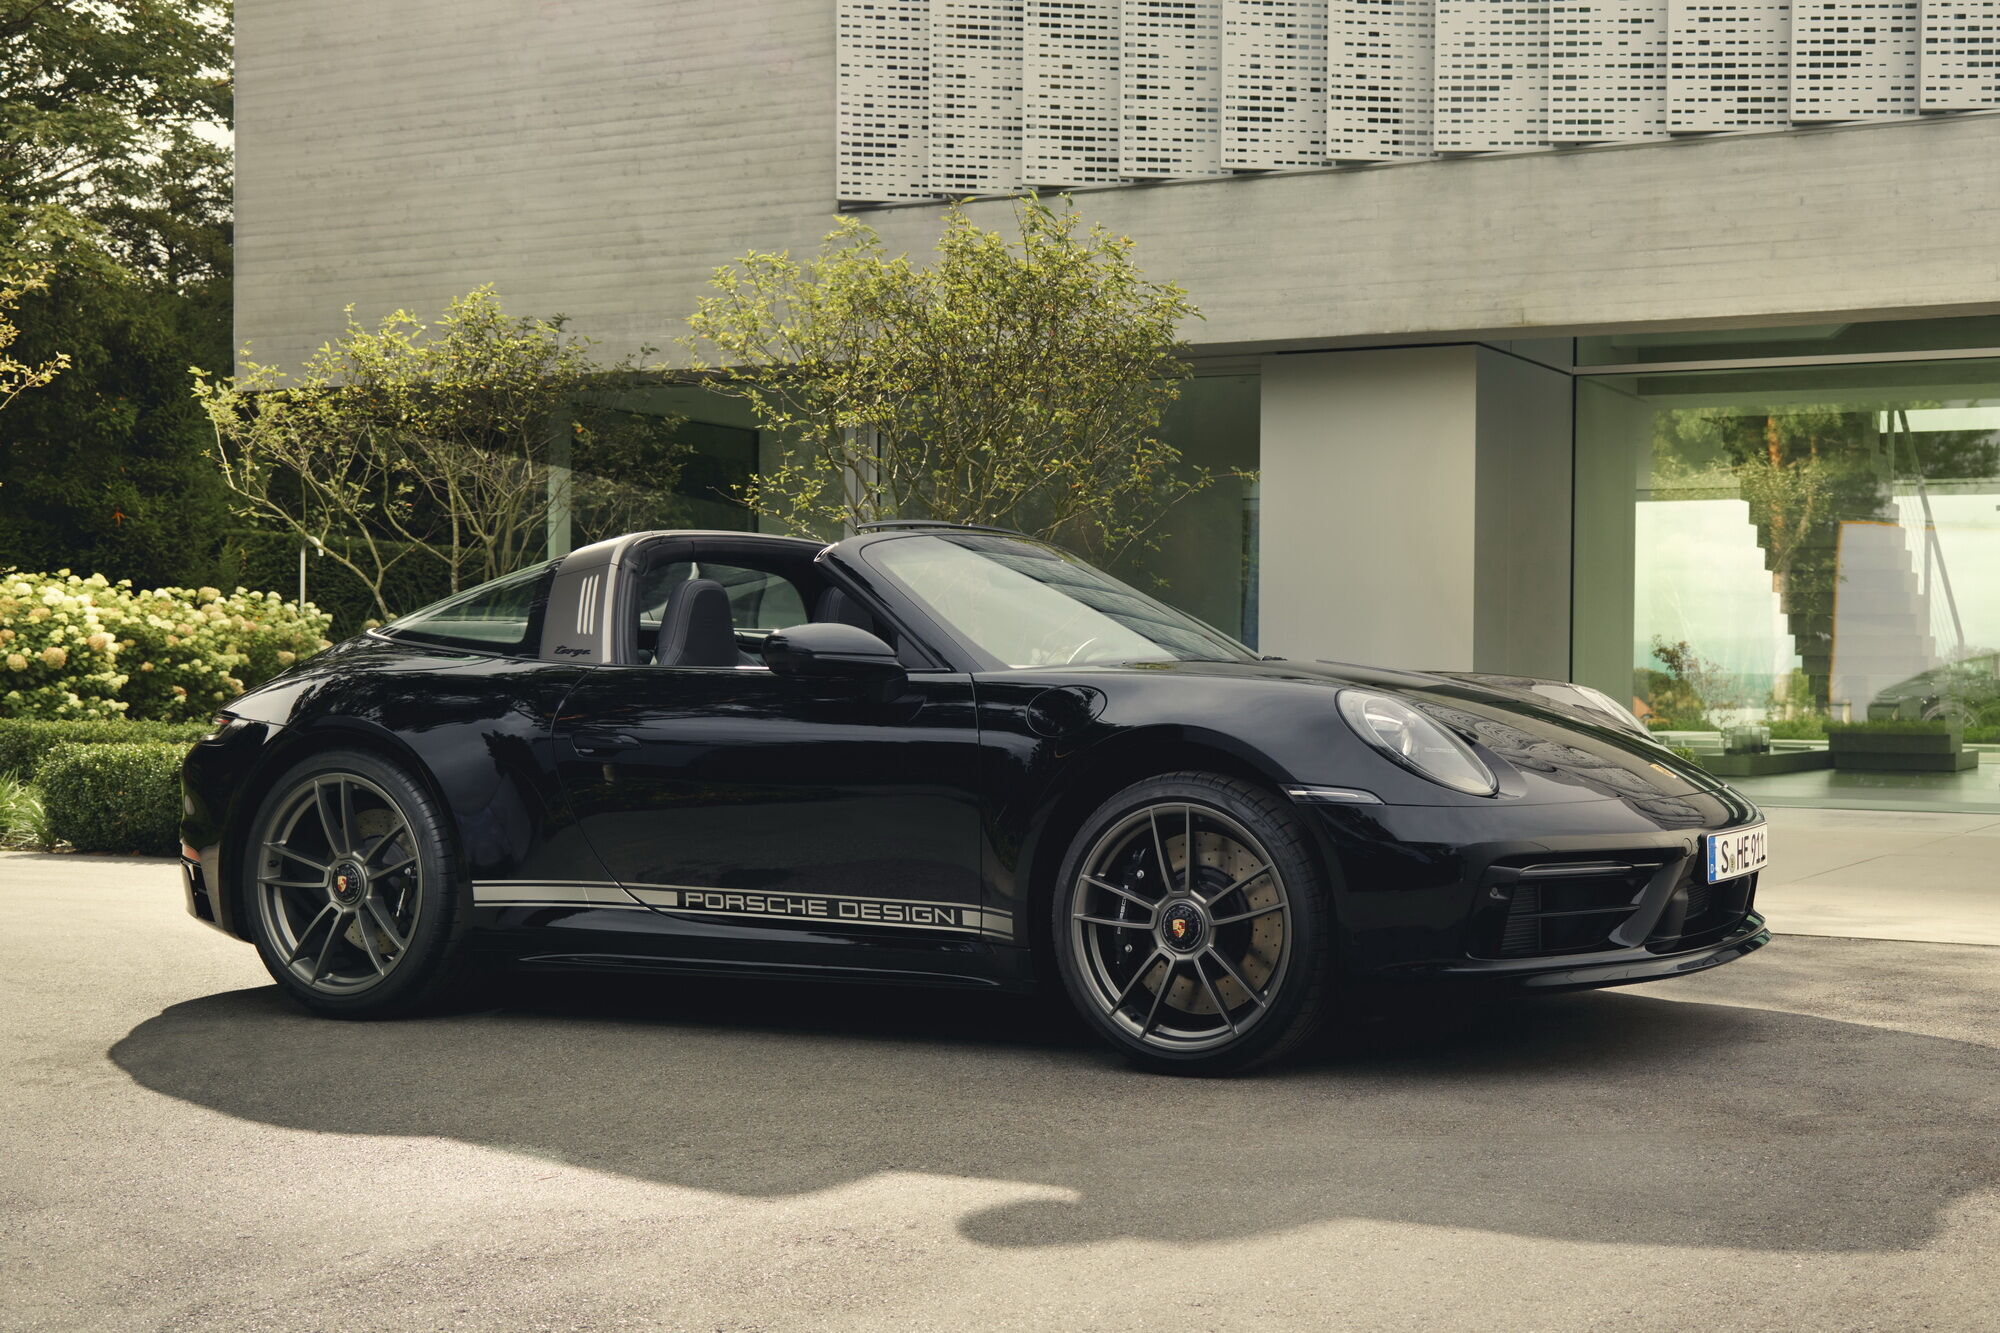 Porsche 911 Edition 50 Years Porsche Design будет выпущен ограниченной серией в количестве 750 экземпляров